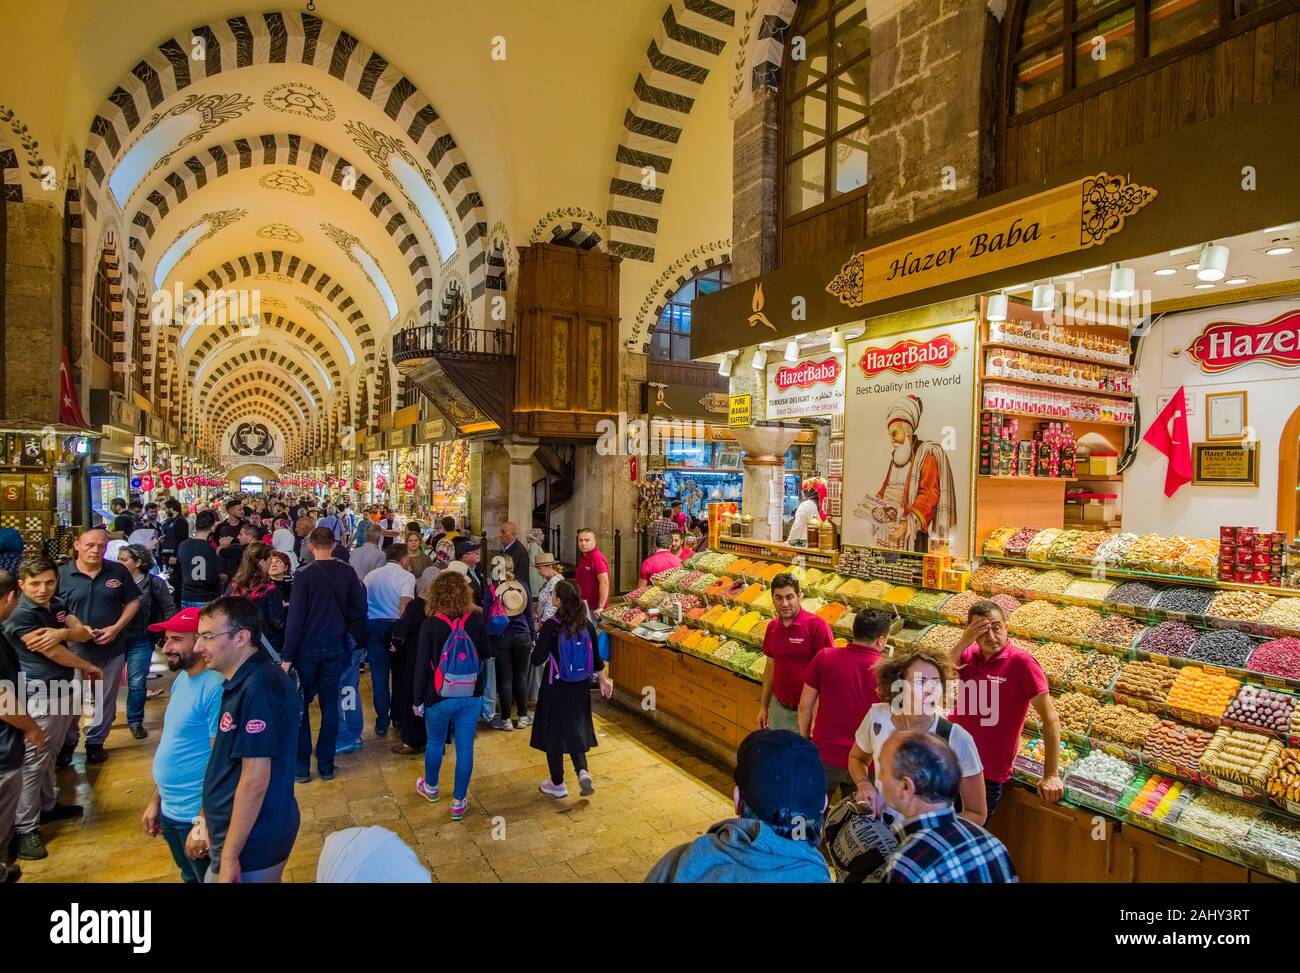 Molte persone sono a passeggiare e a fare shopping all'interno del Bazar delle Spezie, Mısır Çarşısı, noto anche come il Bazaar Egiziano Foto Stock